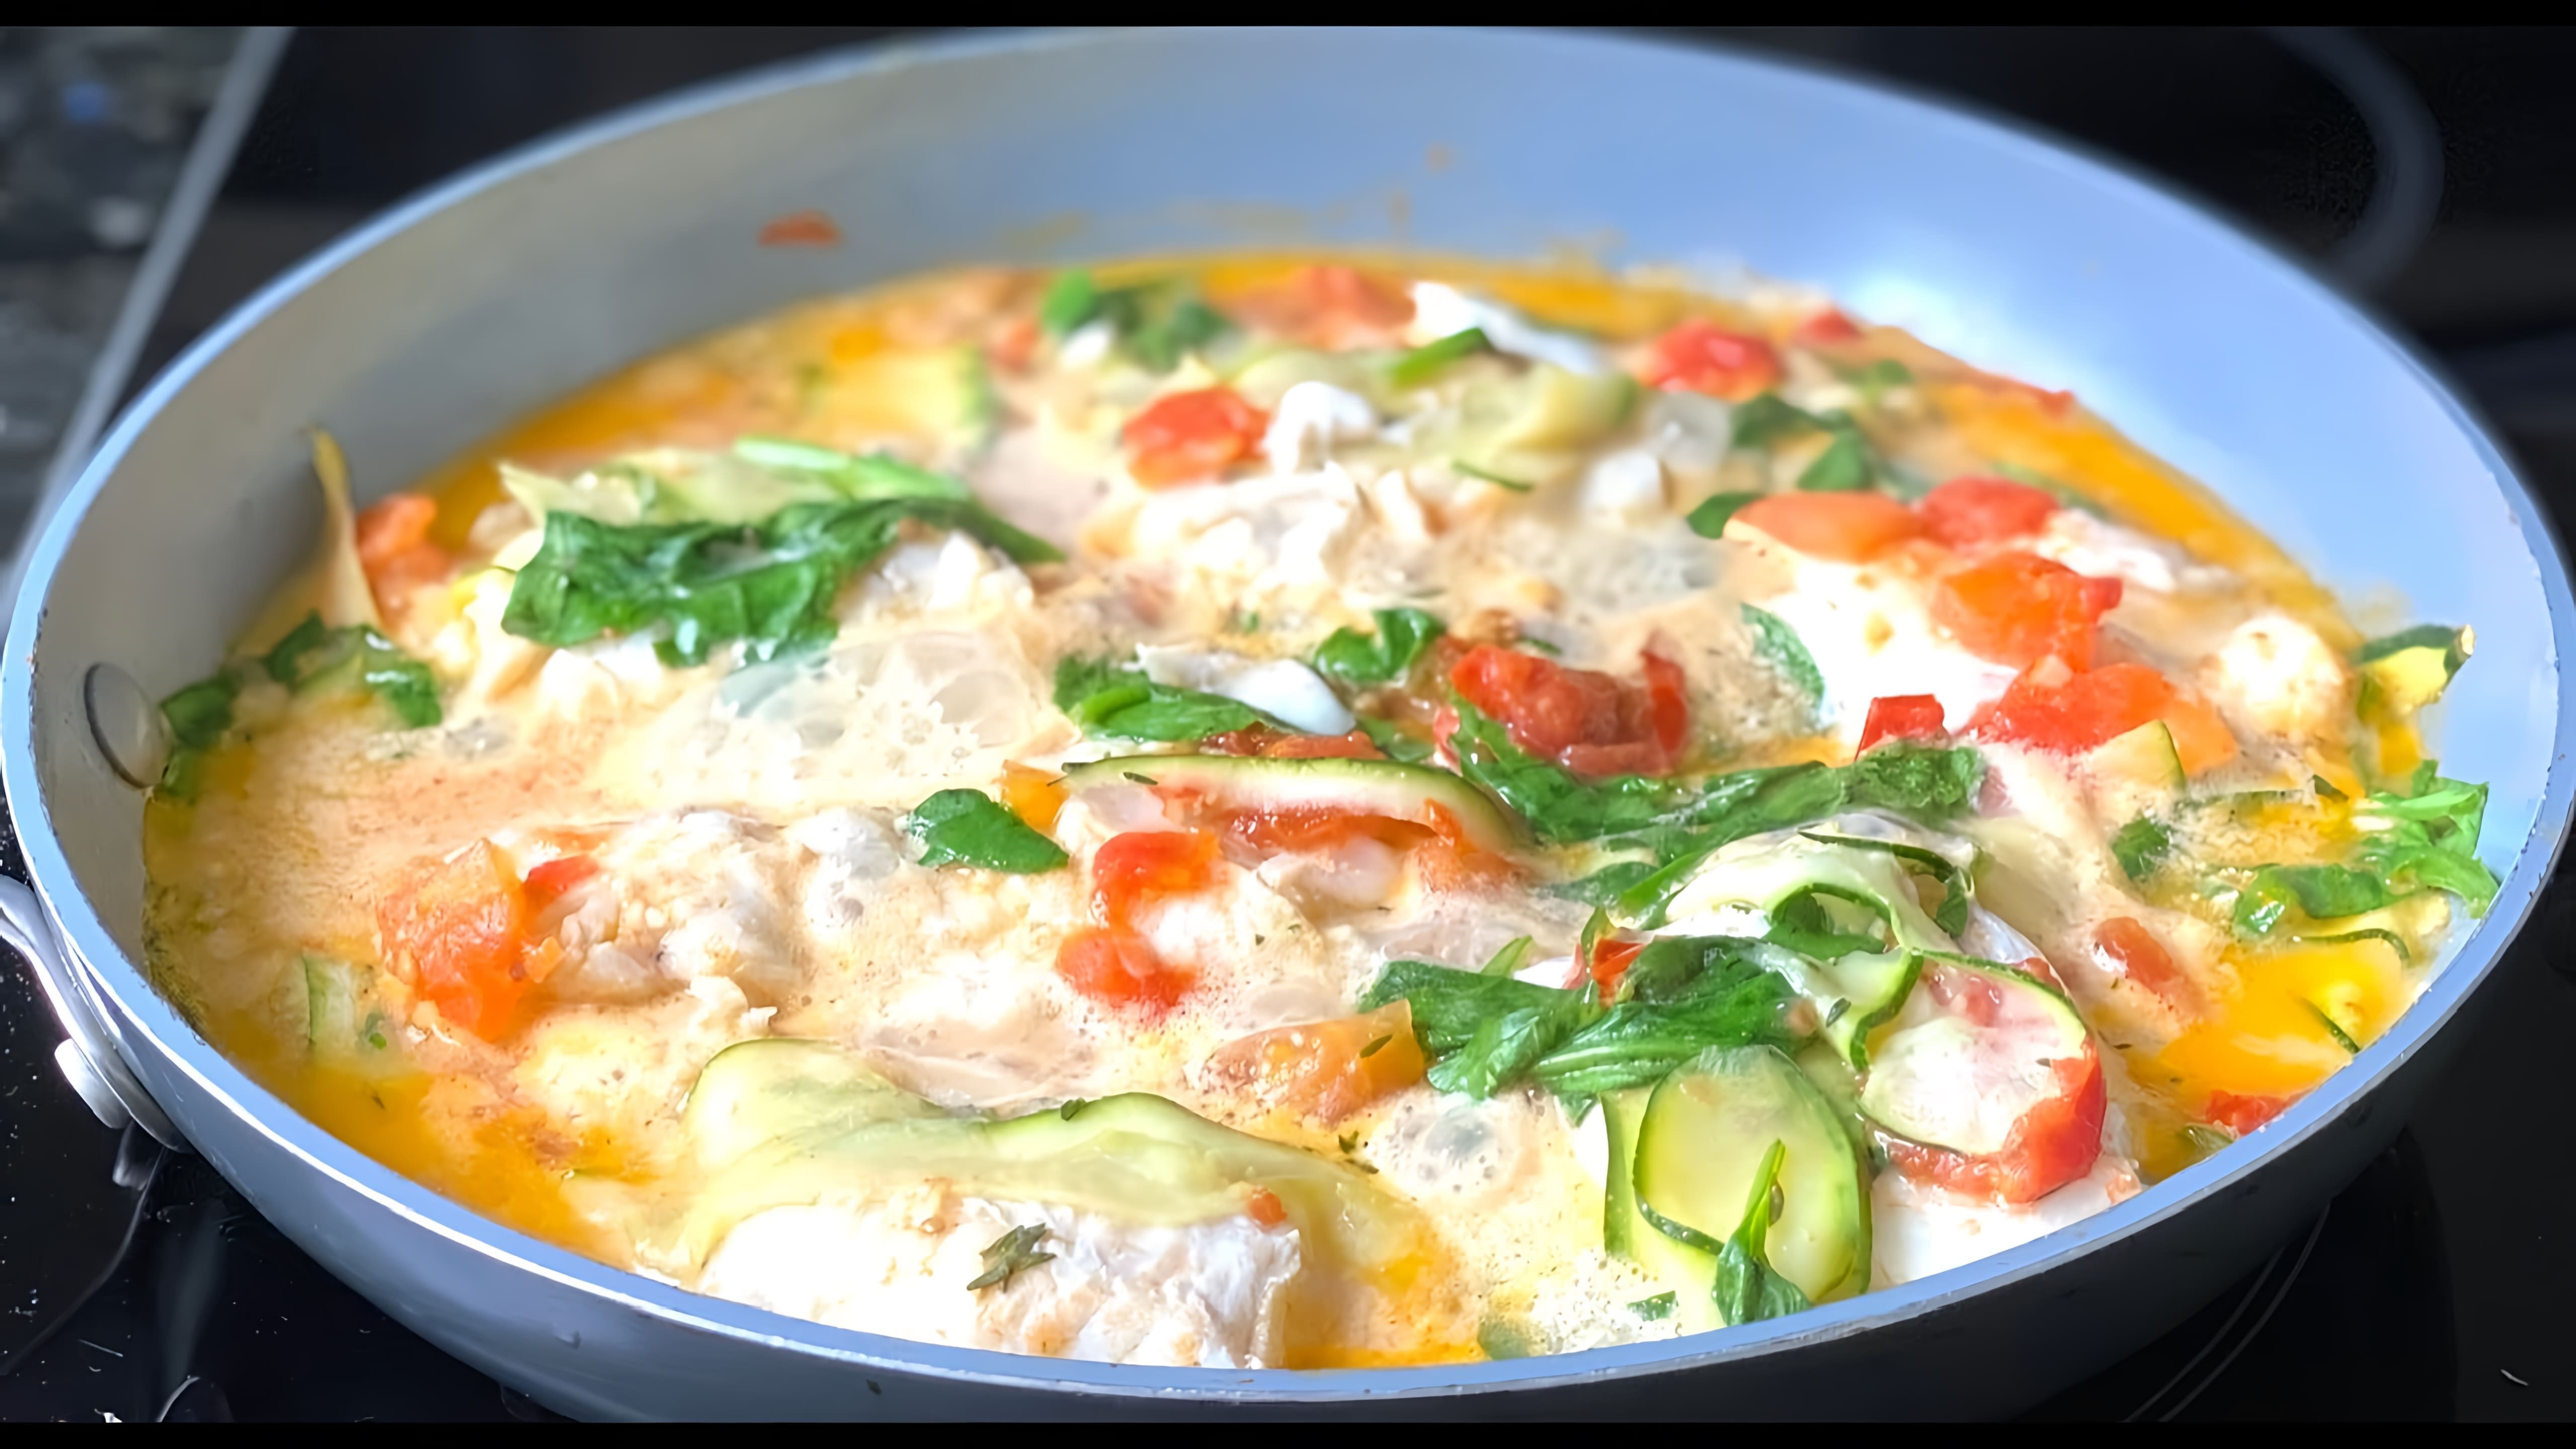 В этом видео демонстрируется процесс приготовления филе белой рыбы в соусе из помидоров, чеснока, кабачка и молока